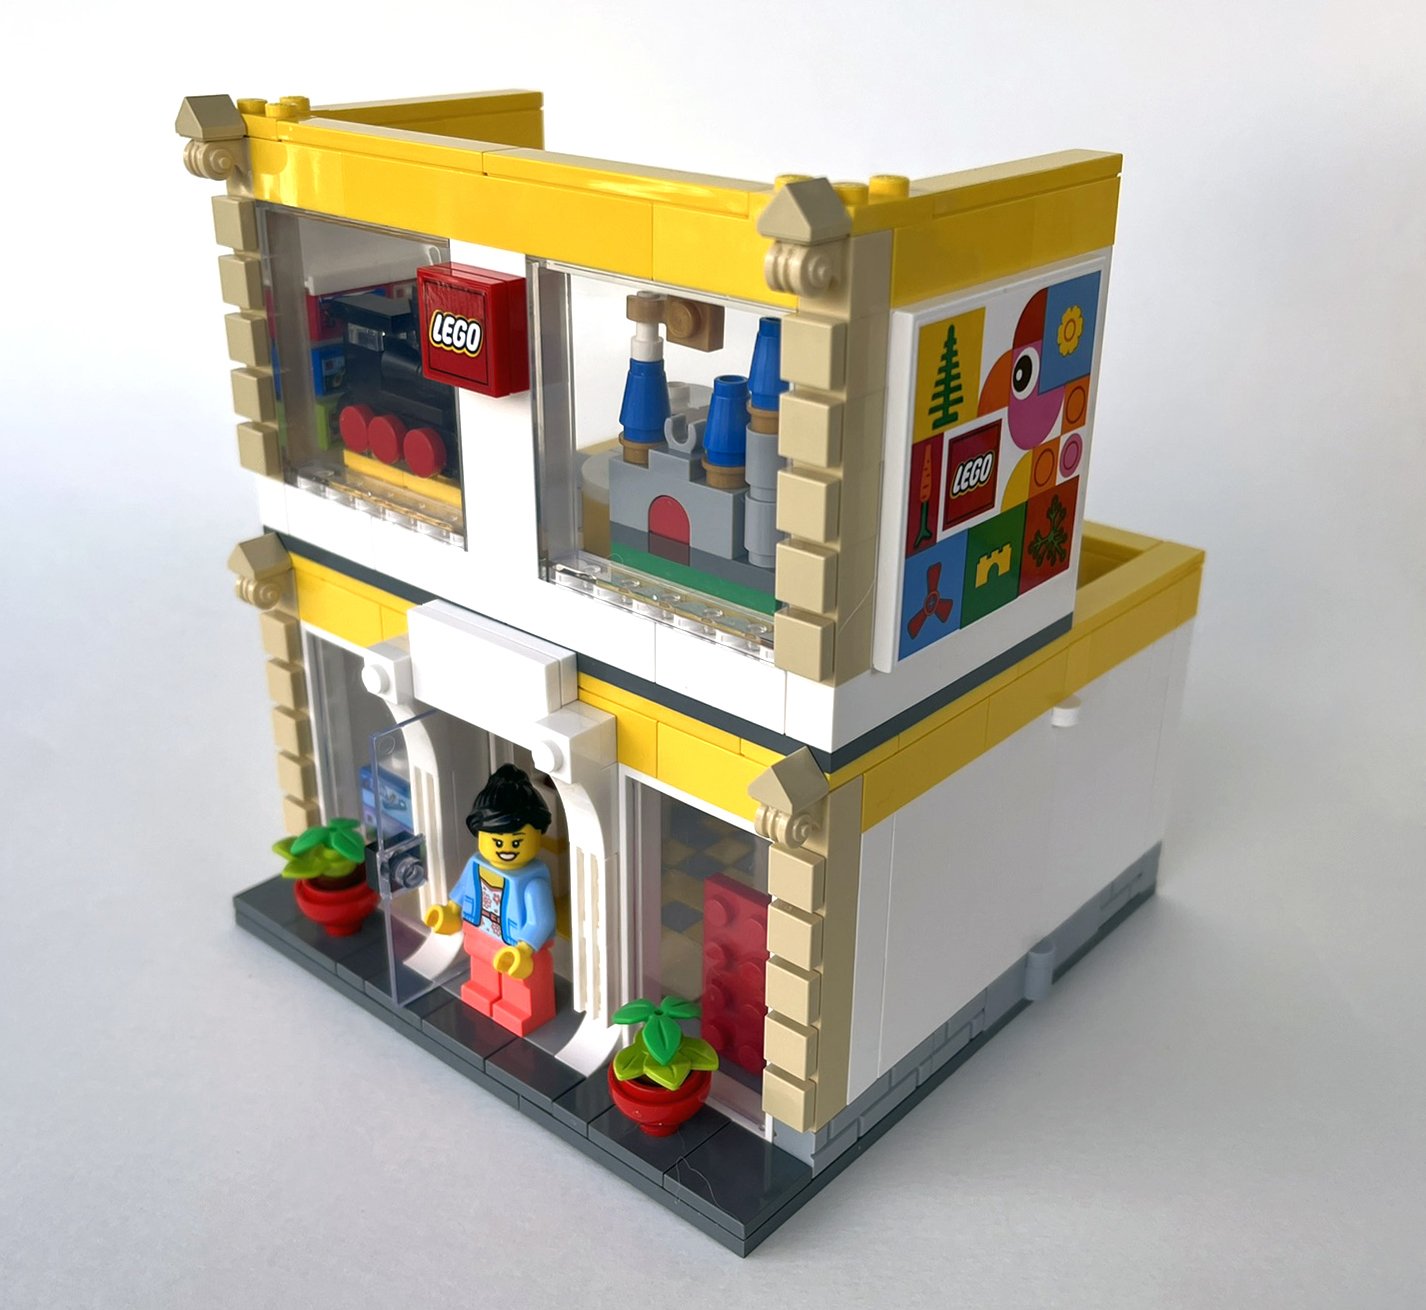 LEGO Store Opening Promo White LEGO Store Shop Set 40145